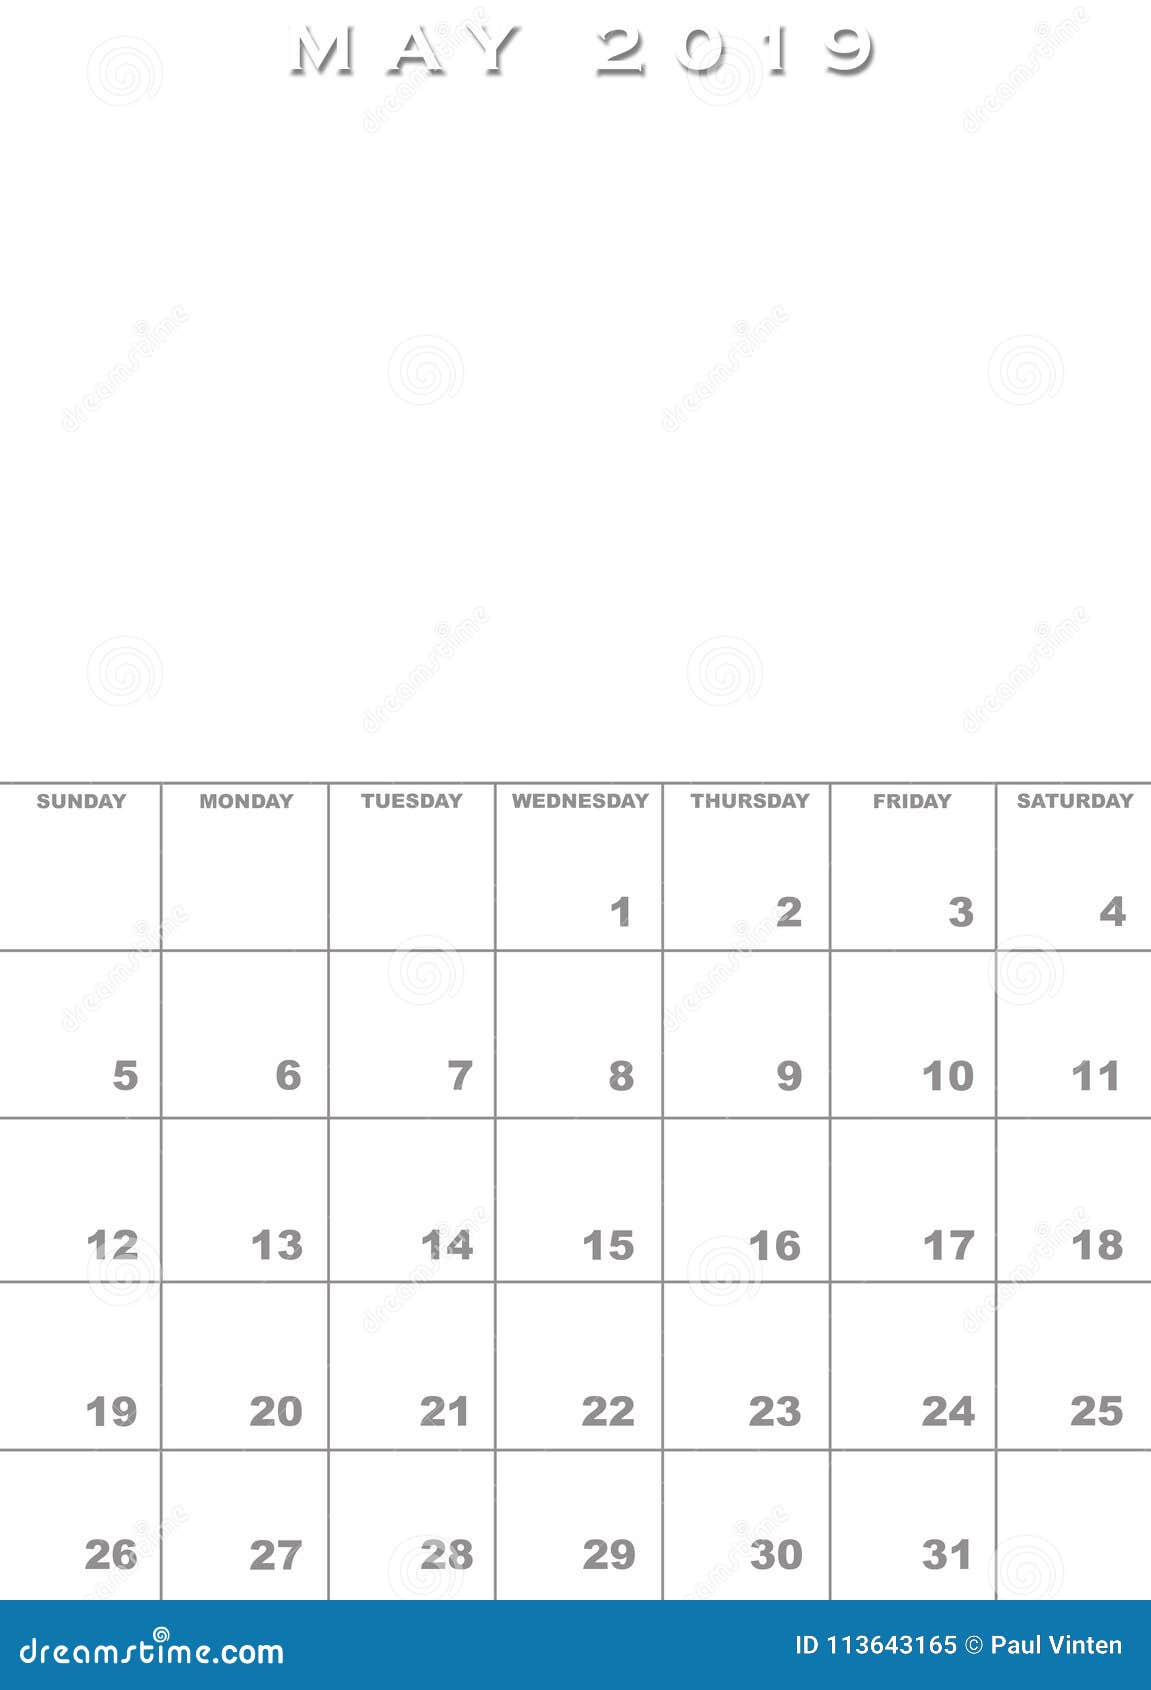 printable-calendar-may-2019-printable-templates